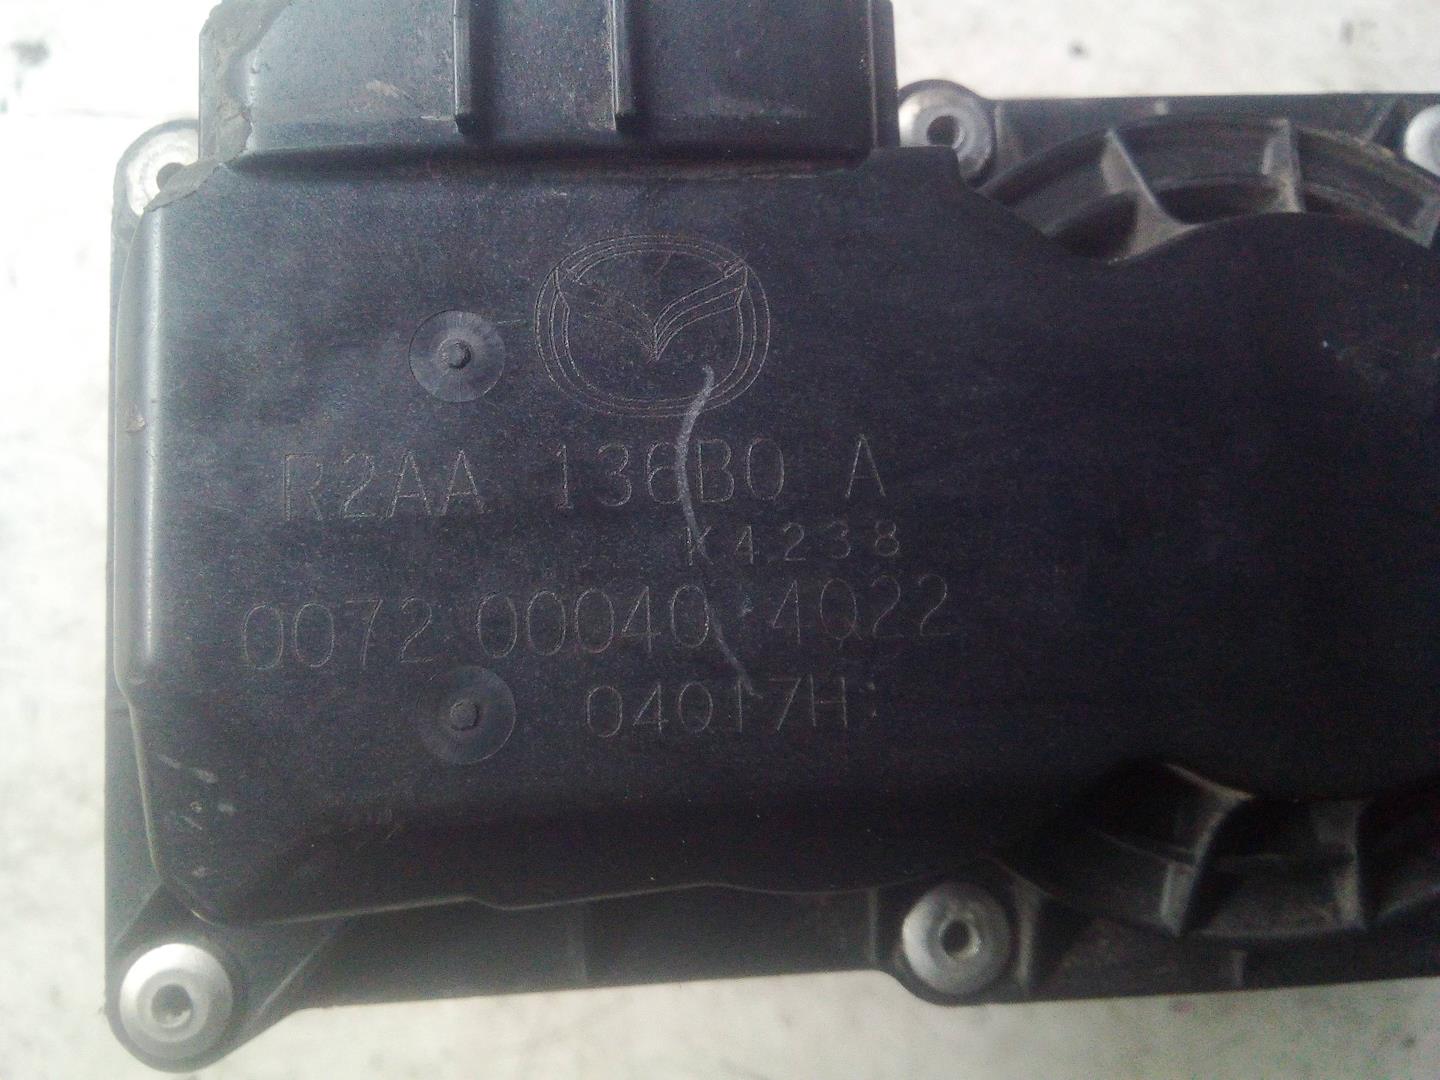 MAZDA 6 GH (2007-2013) Throttle Body R2AA136B0A, 0072000404Q22 18514551